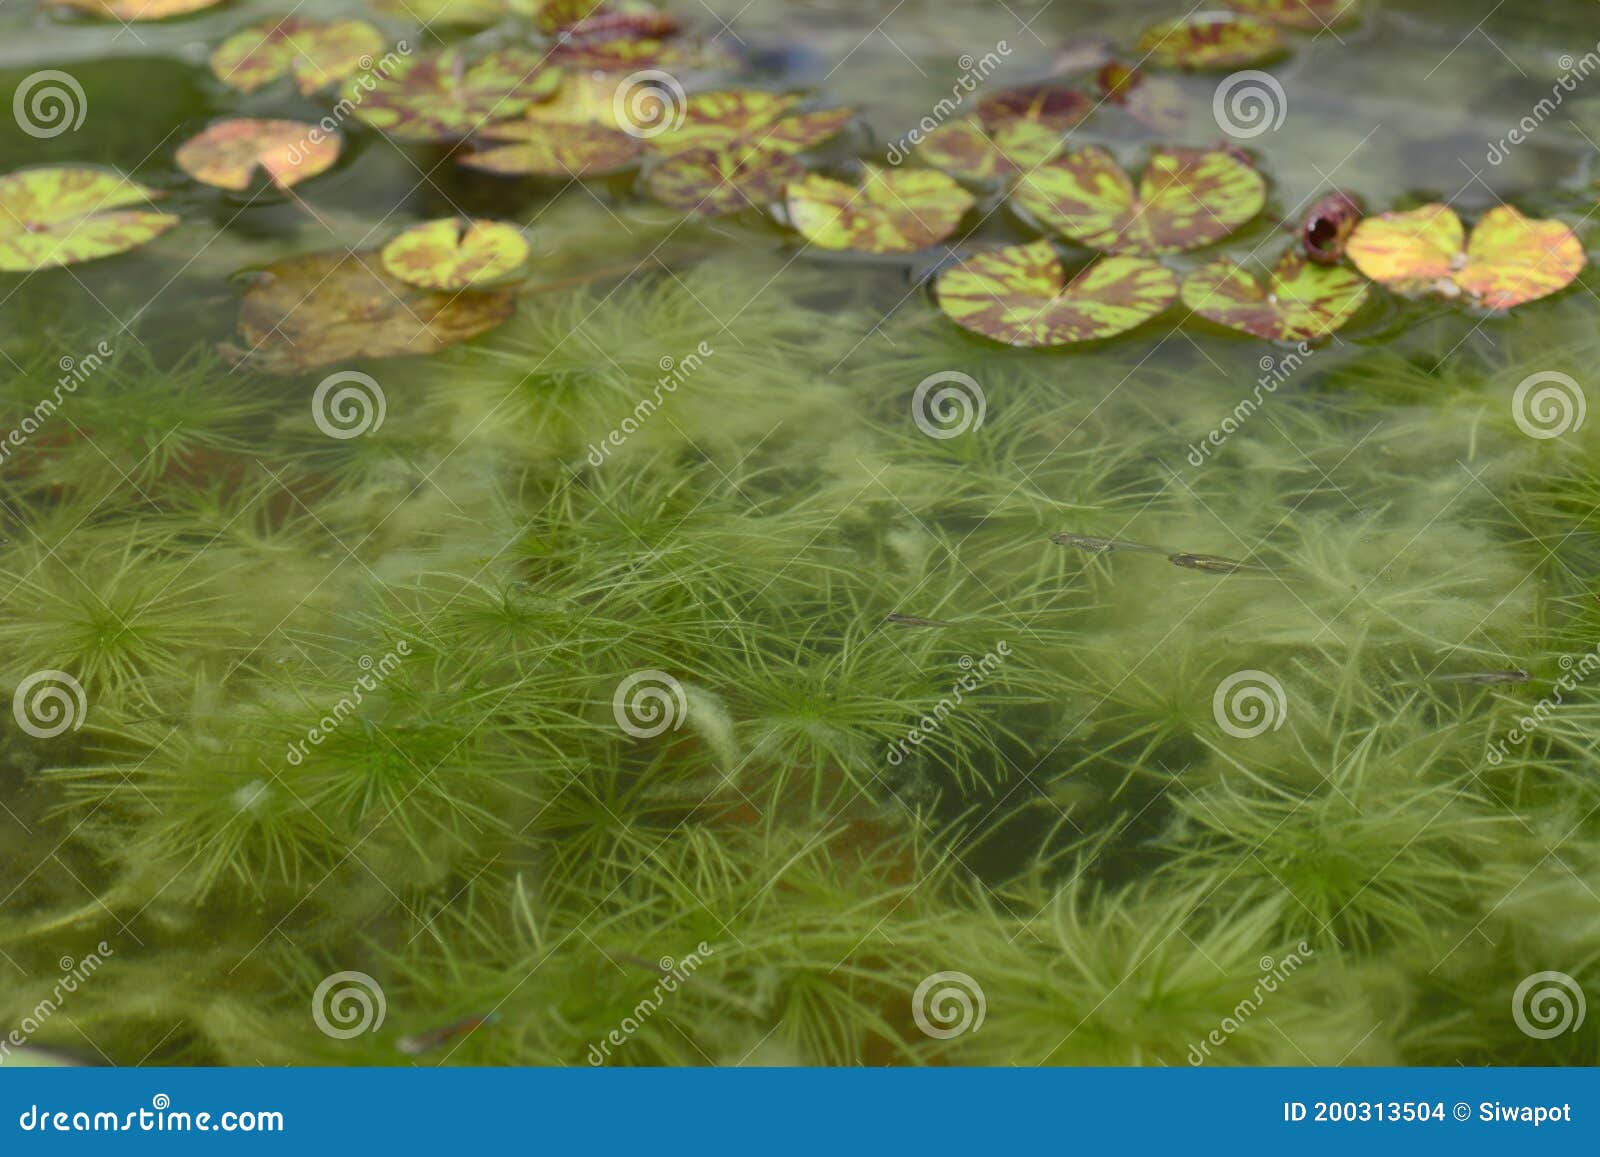 hydrilla verticillata plant underwater with natural background.